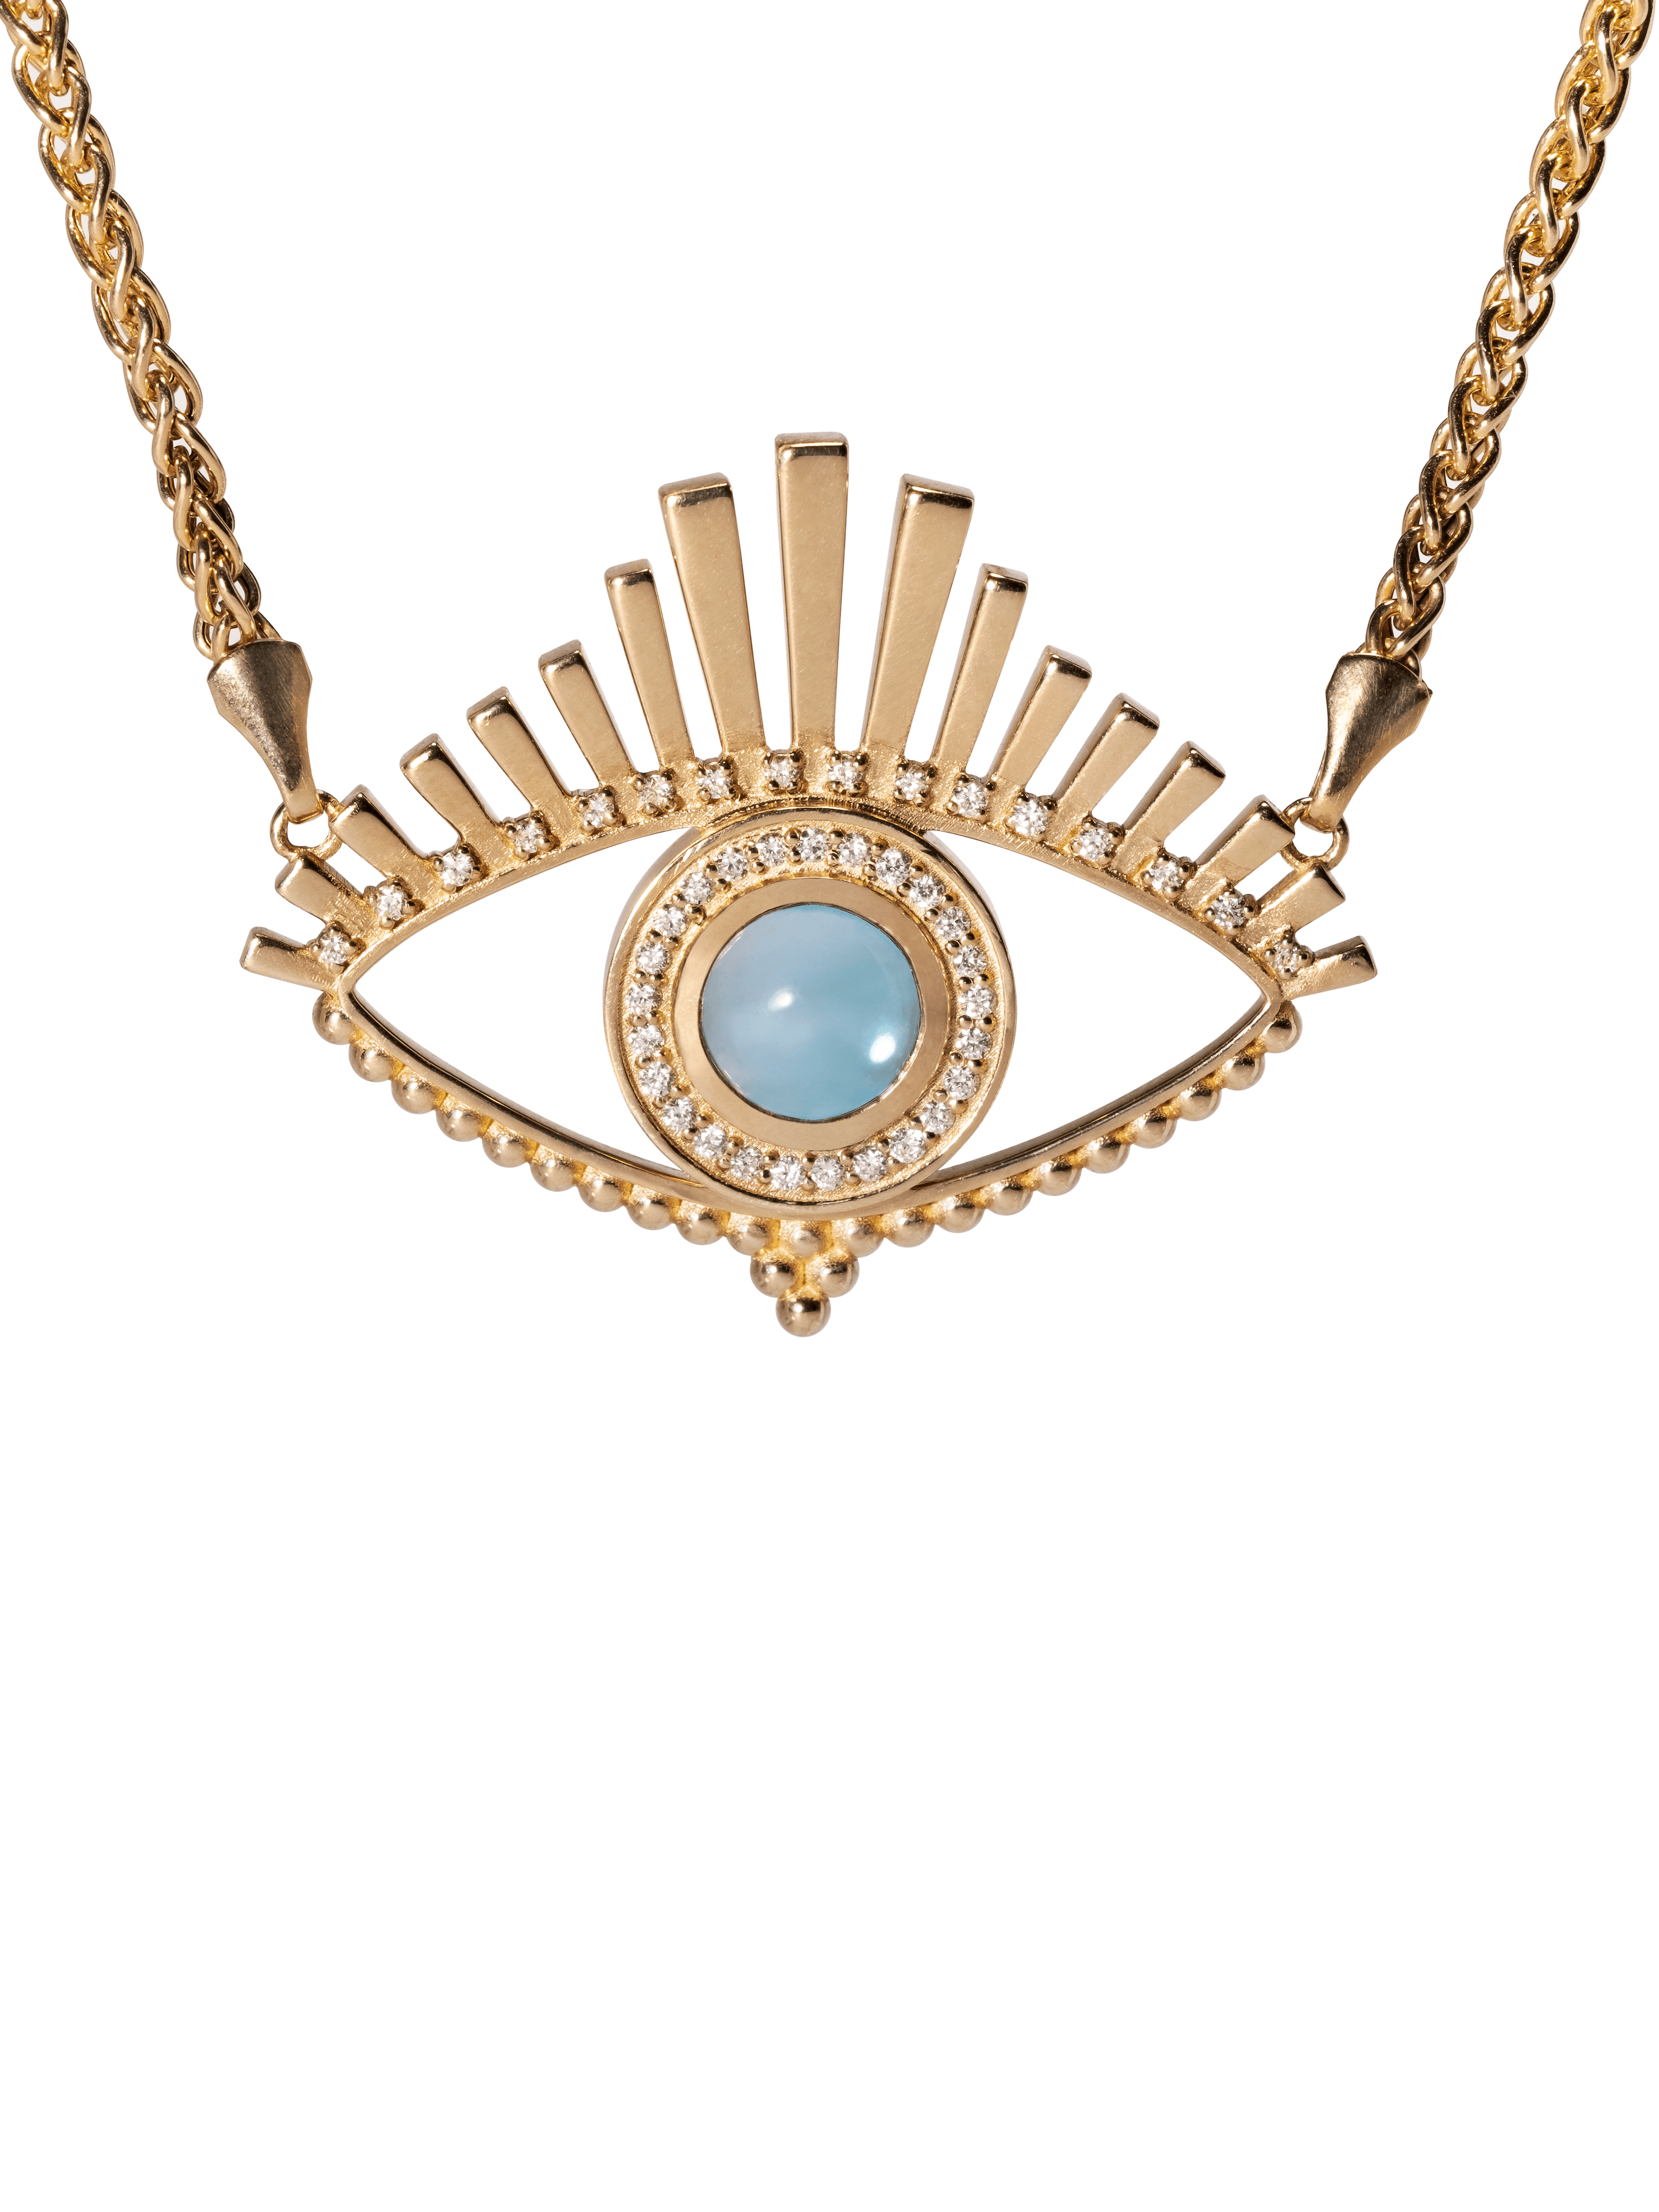 Diamond gold blue topaz evil eye pendant necklace.